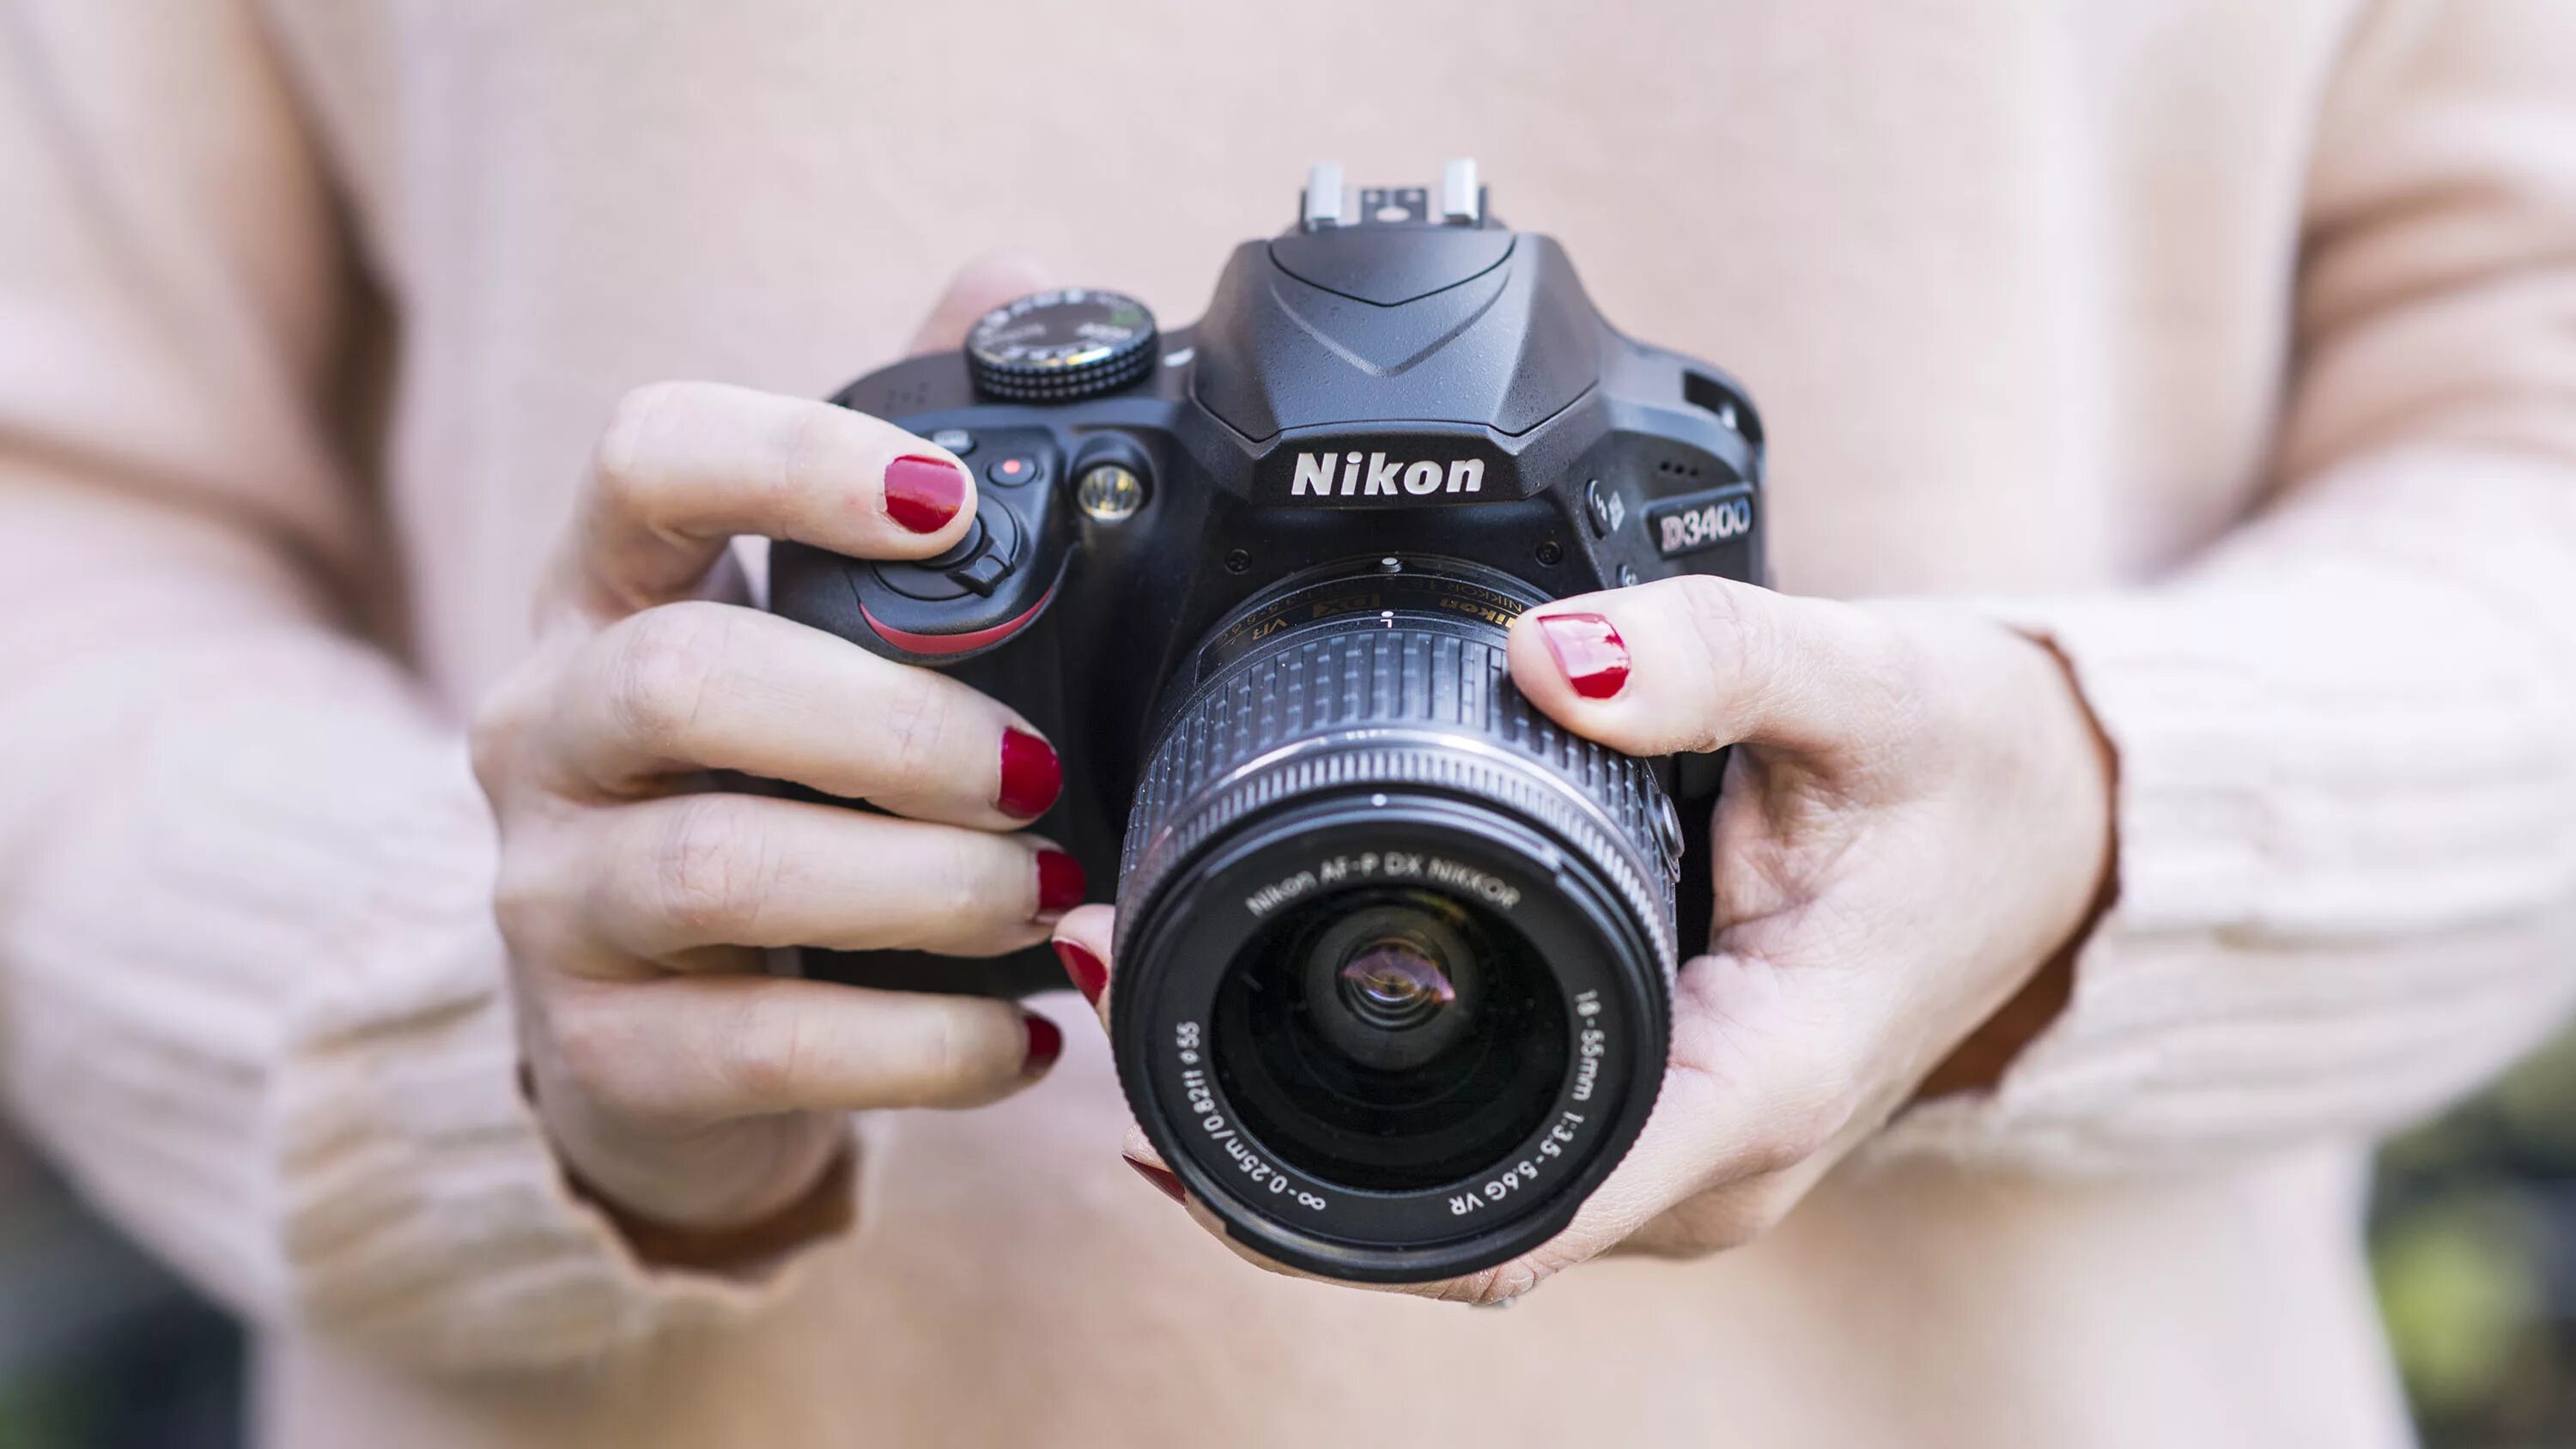 Камера друг. Nikon d3400 и Canon. Фотоаппарат в руках. Профессиональный фотоаппарат в руках. Фотоаппарат в руках девушки.